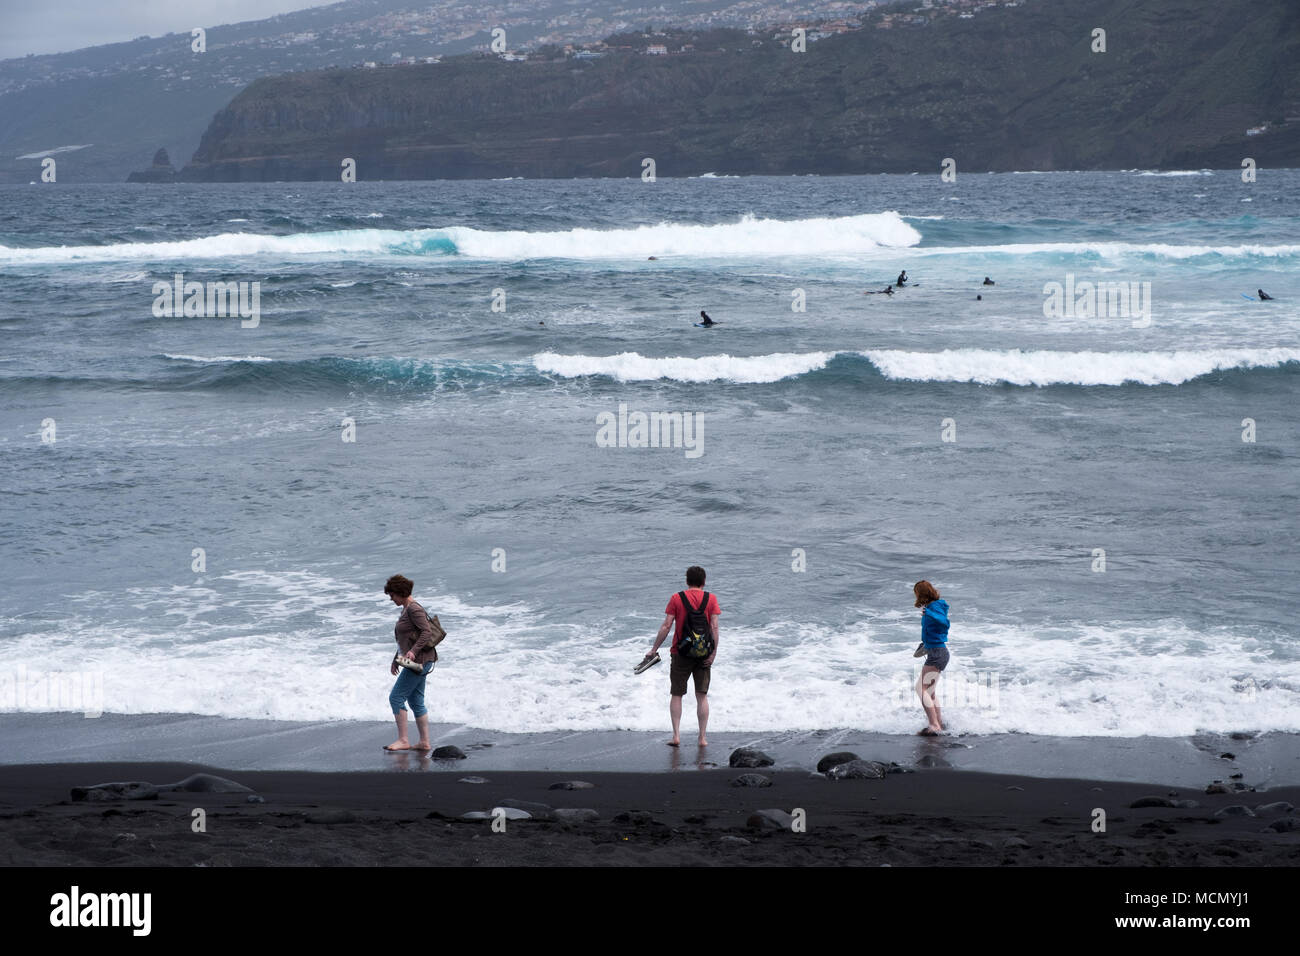 Puerto de la Cruz, Teneriffa, Kanarische Inseln; Touristen testen Sie die Wassertemperatur auf schwarzem Sand Strand, während Surfer warten, um die Wellen zu fangen. Stockfoto